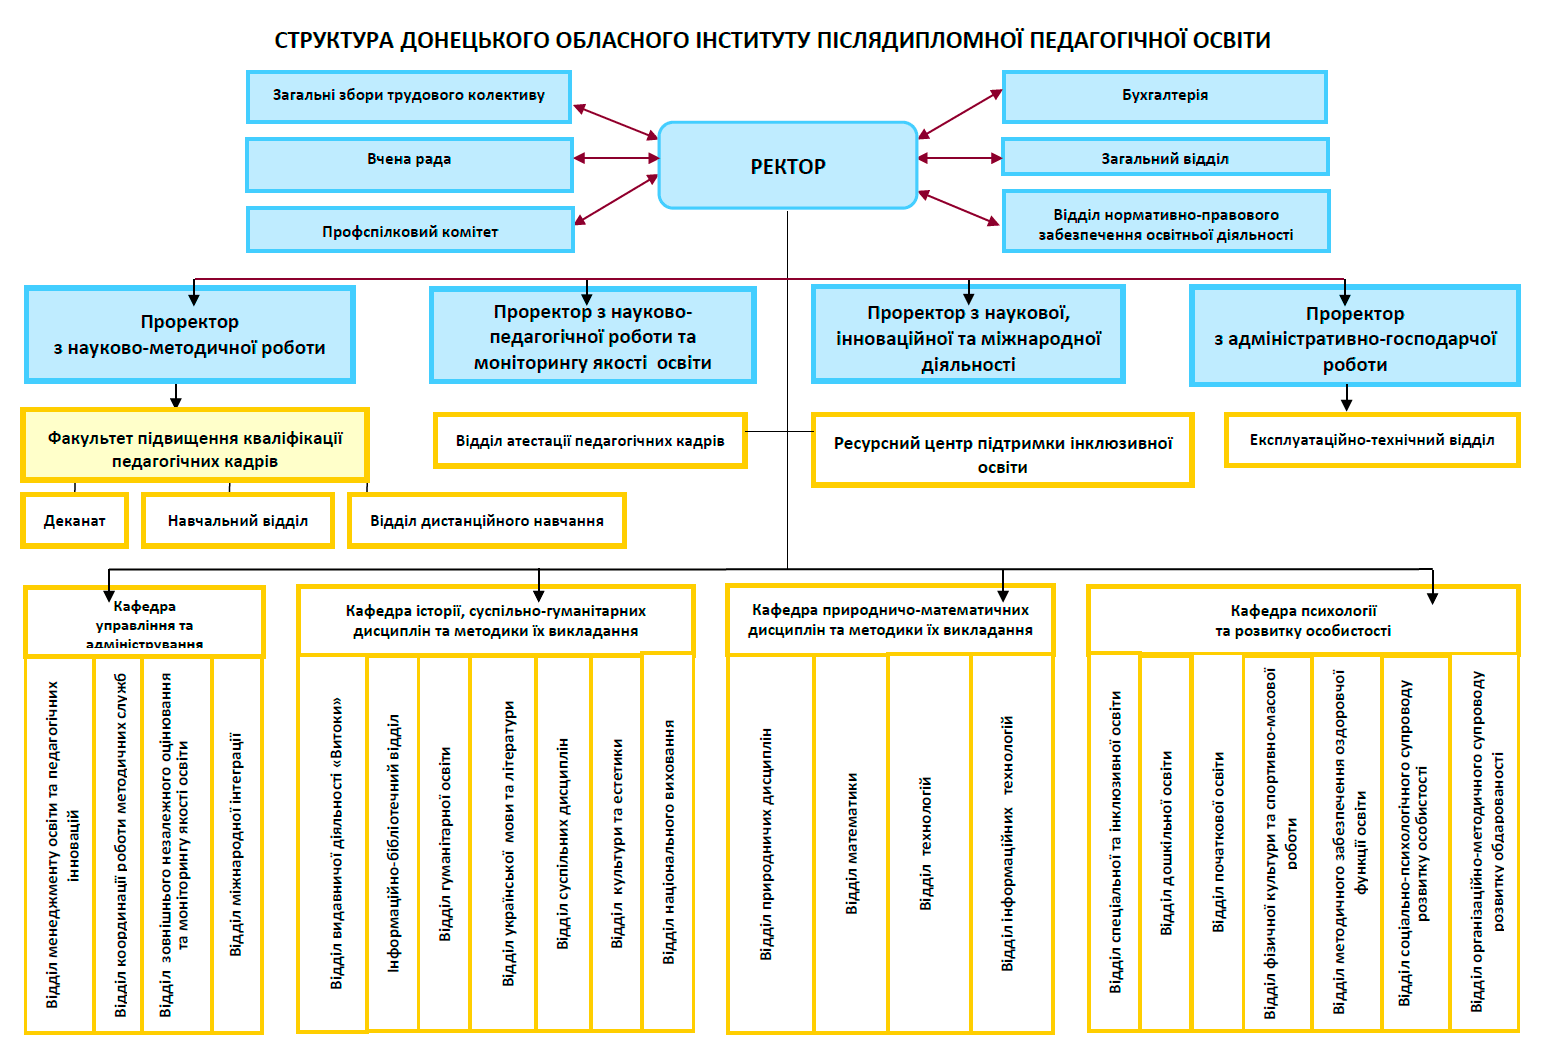 Struktura DonOblIPPO